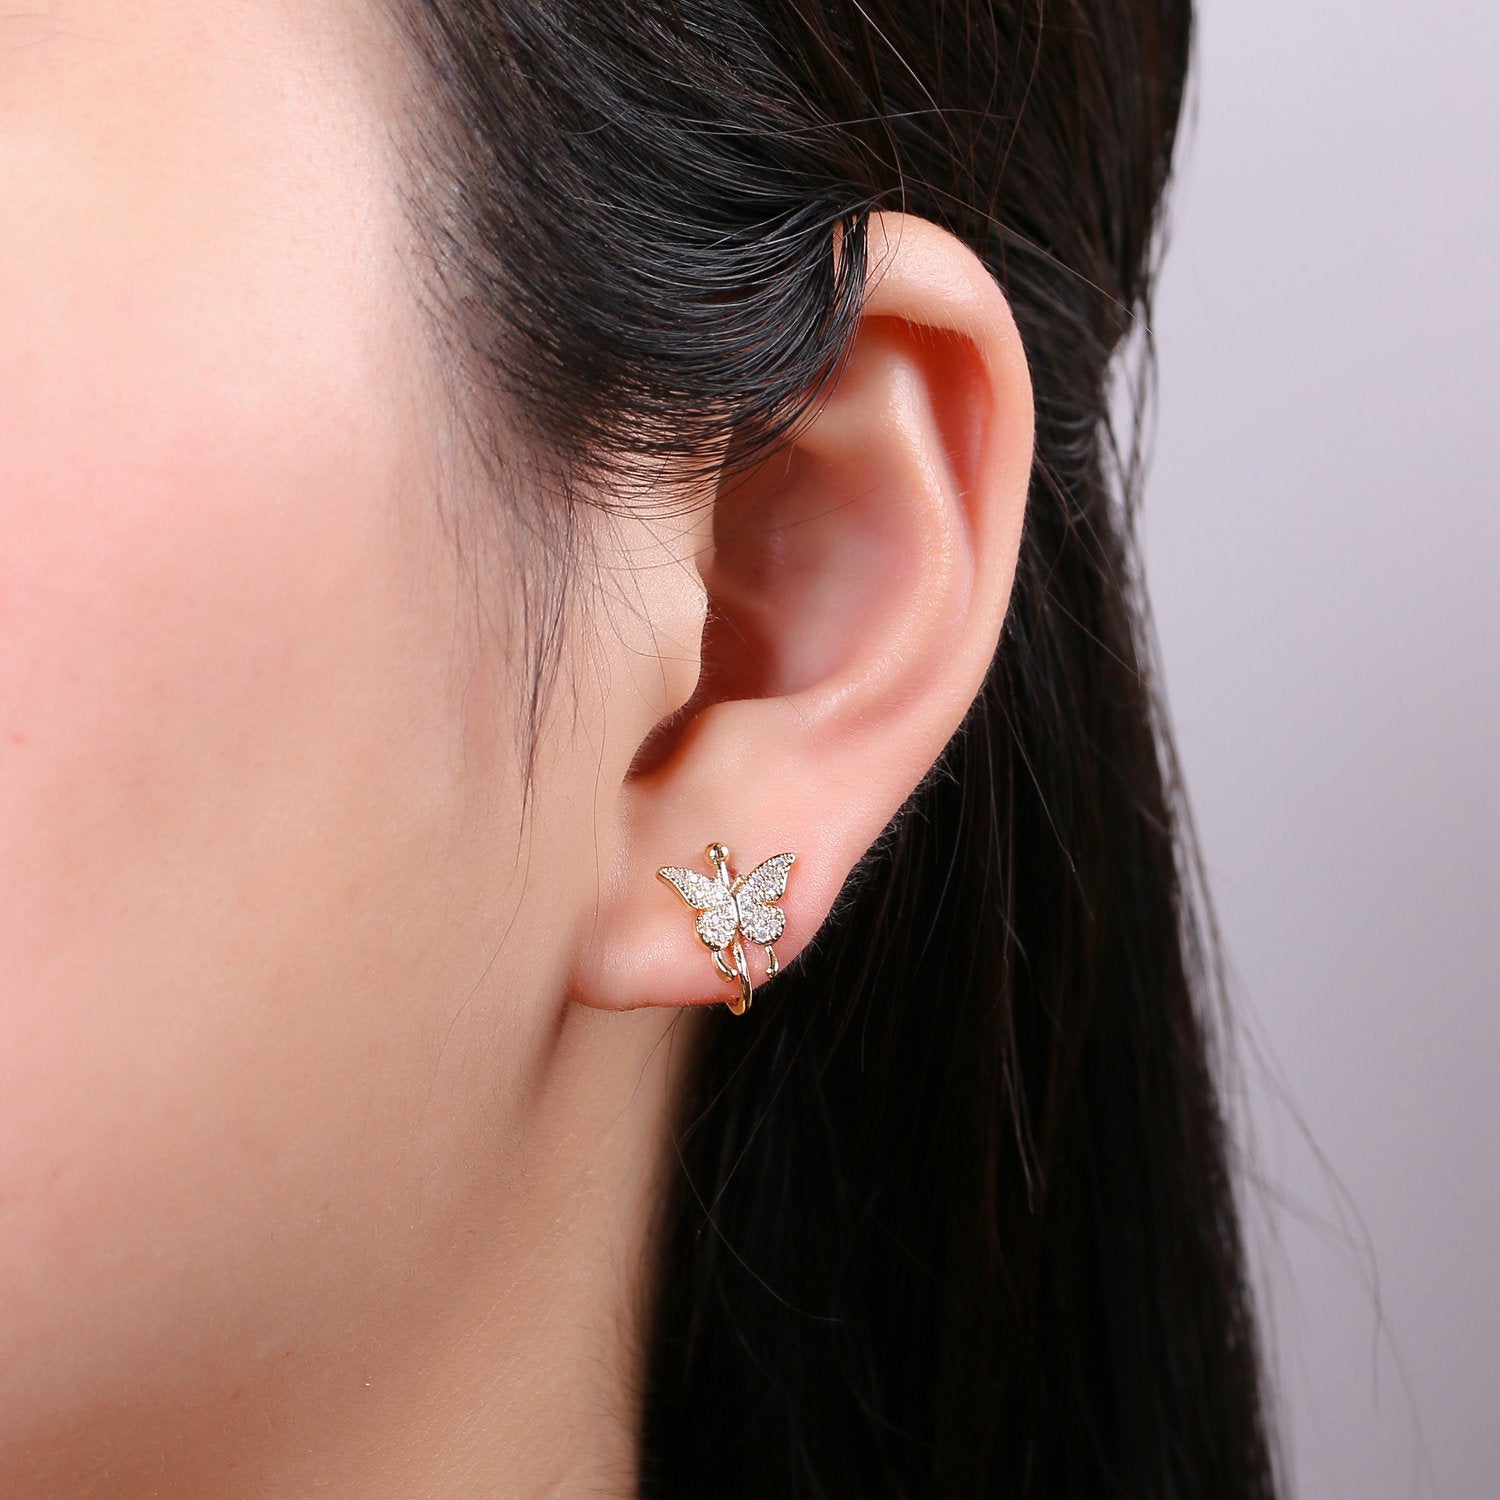 1x Butterfly Ear Cuff Ear Wraps - Butterfly Jewelry - Fake Pierced Earrings - Fake Piercing - Gifts For Teens -Teenage Girl Gift Idea - DLUXCA